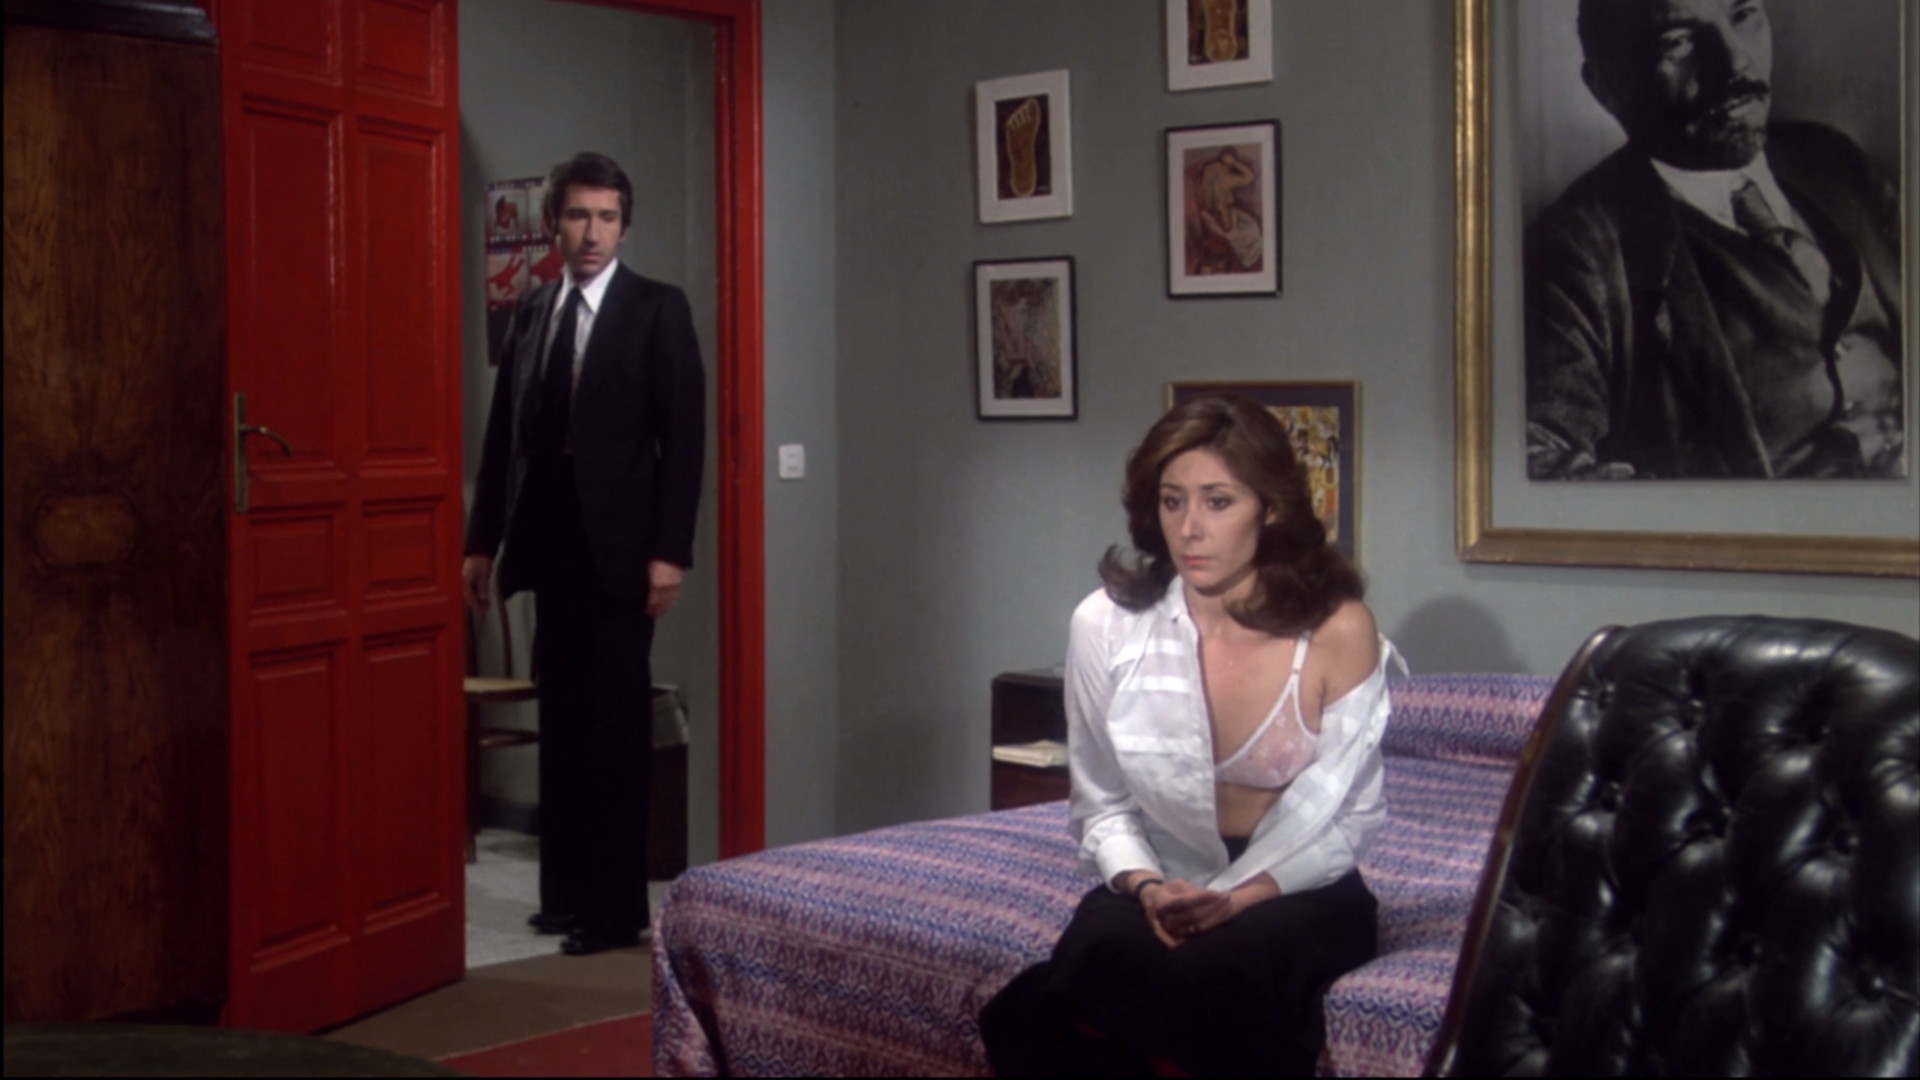 Eine Frau sitzt auf einem Bett und starrt vor sich hin. In der roten Zimmertür steht ein Mann im Anzug.